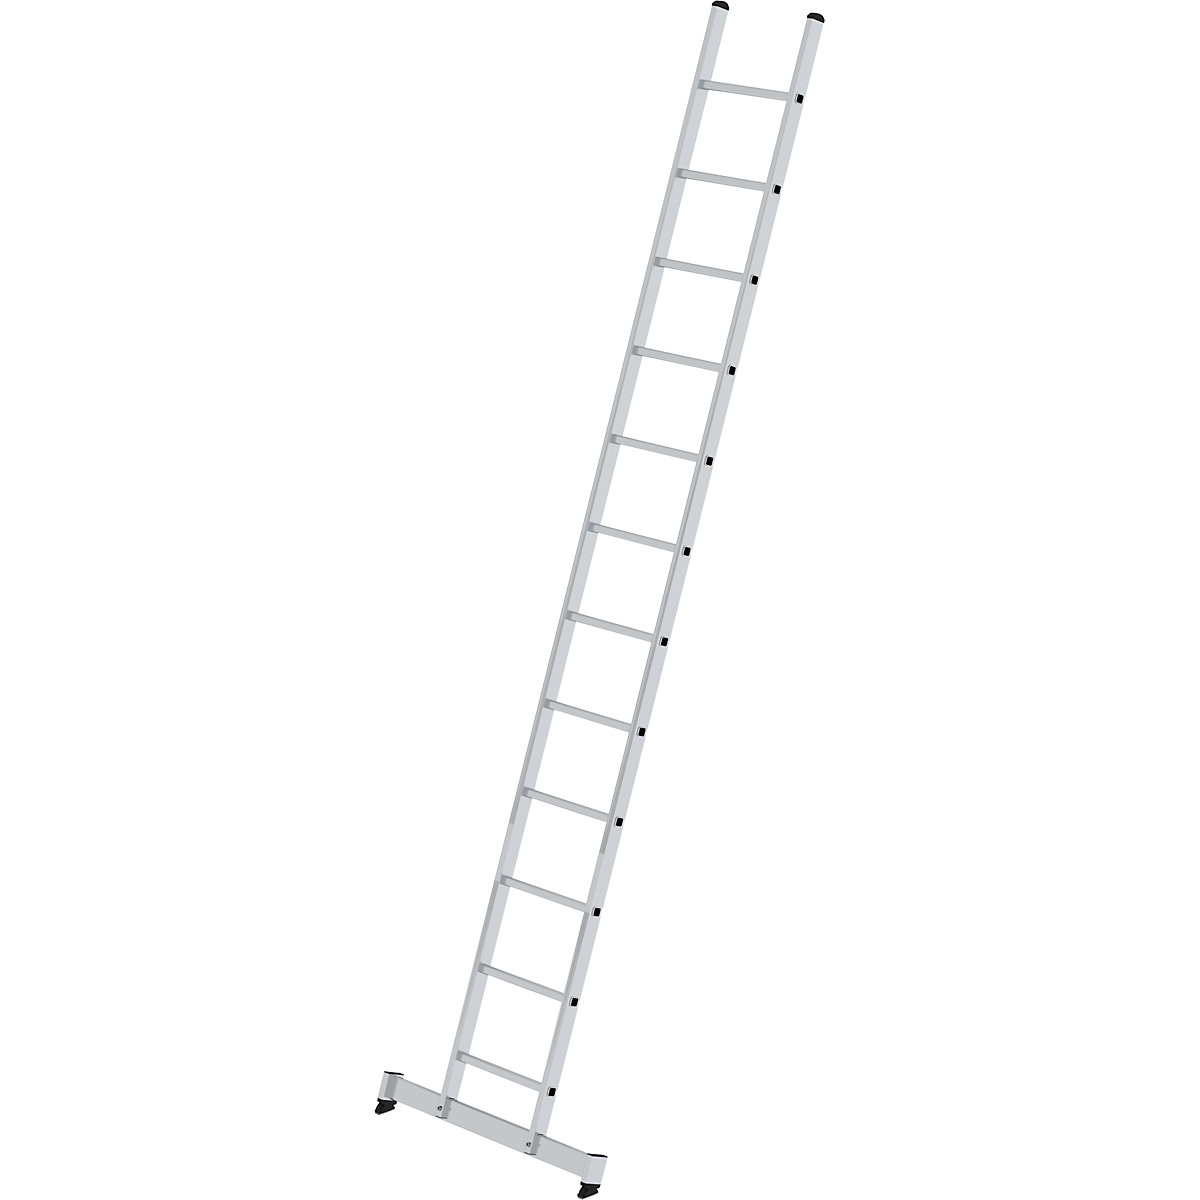 Príložný rebrík s priečkami – MUNK, profesionálne vyhotovenie, šírka 420 mm, 12 priečok, s priečnikom nivello®-6